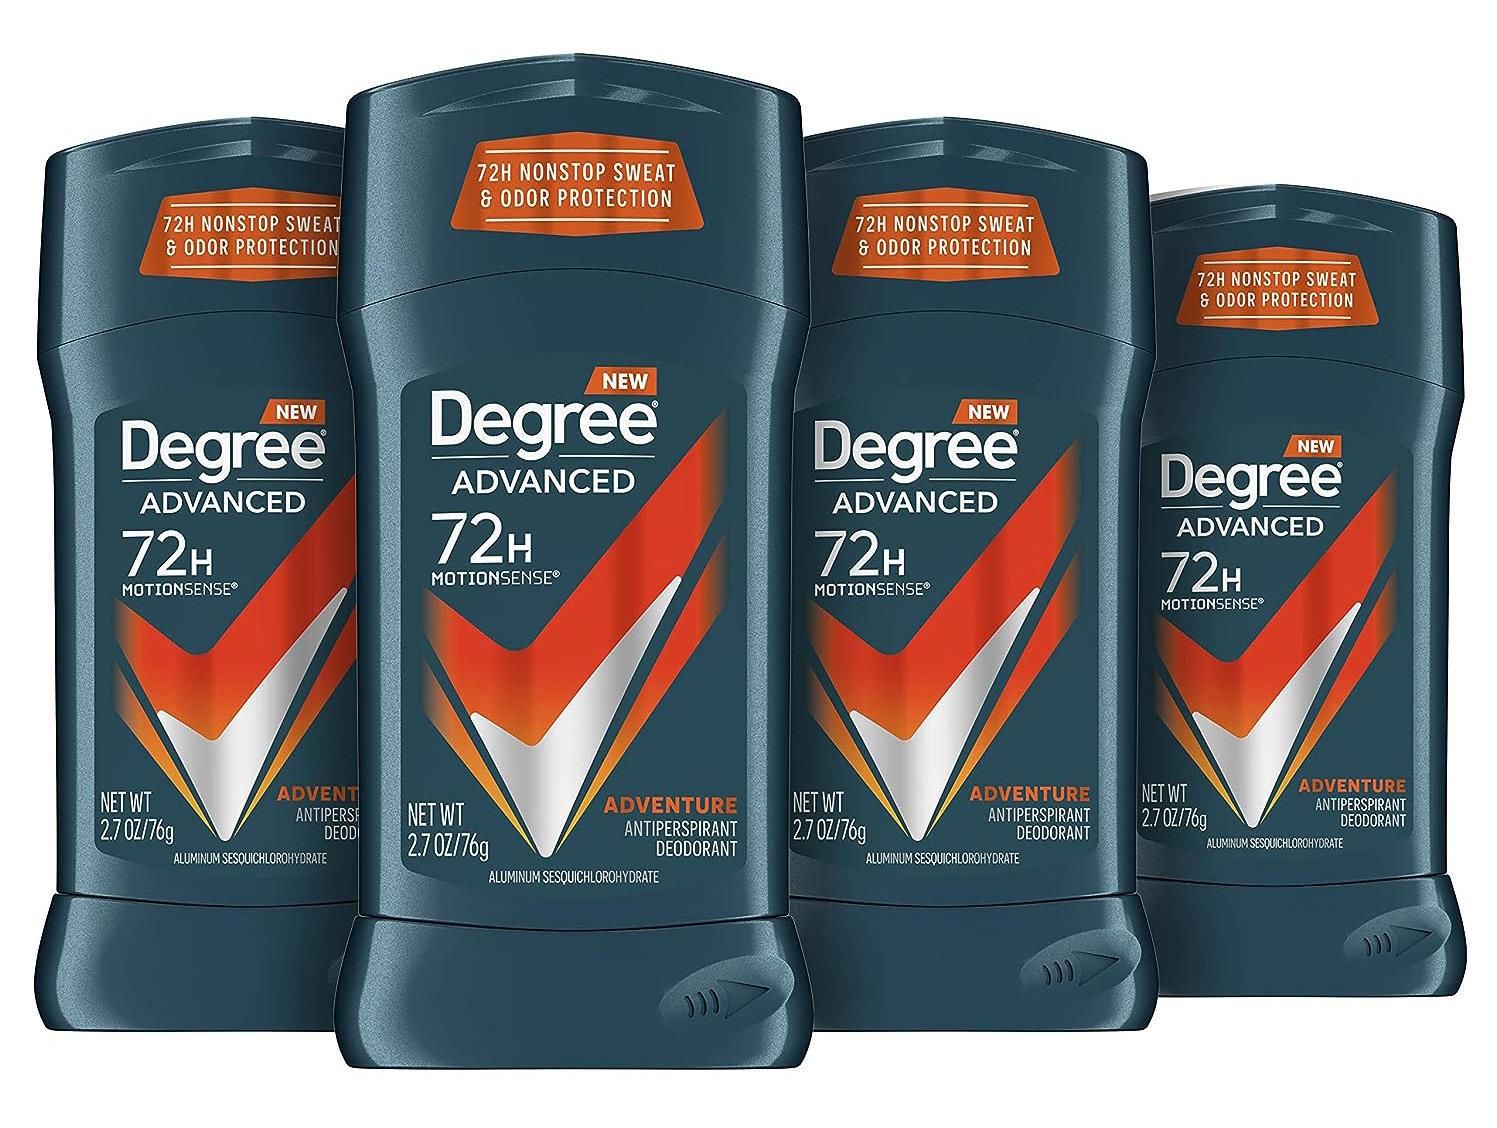 Degree Men Antiperspirant Deodorant Adventure 4 Count for $9.86